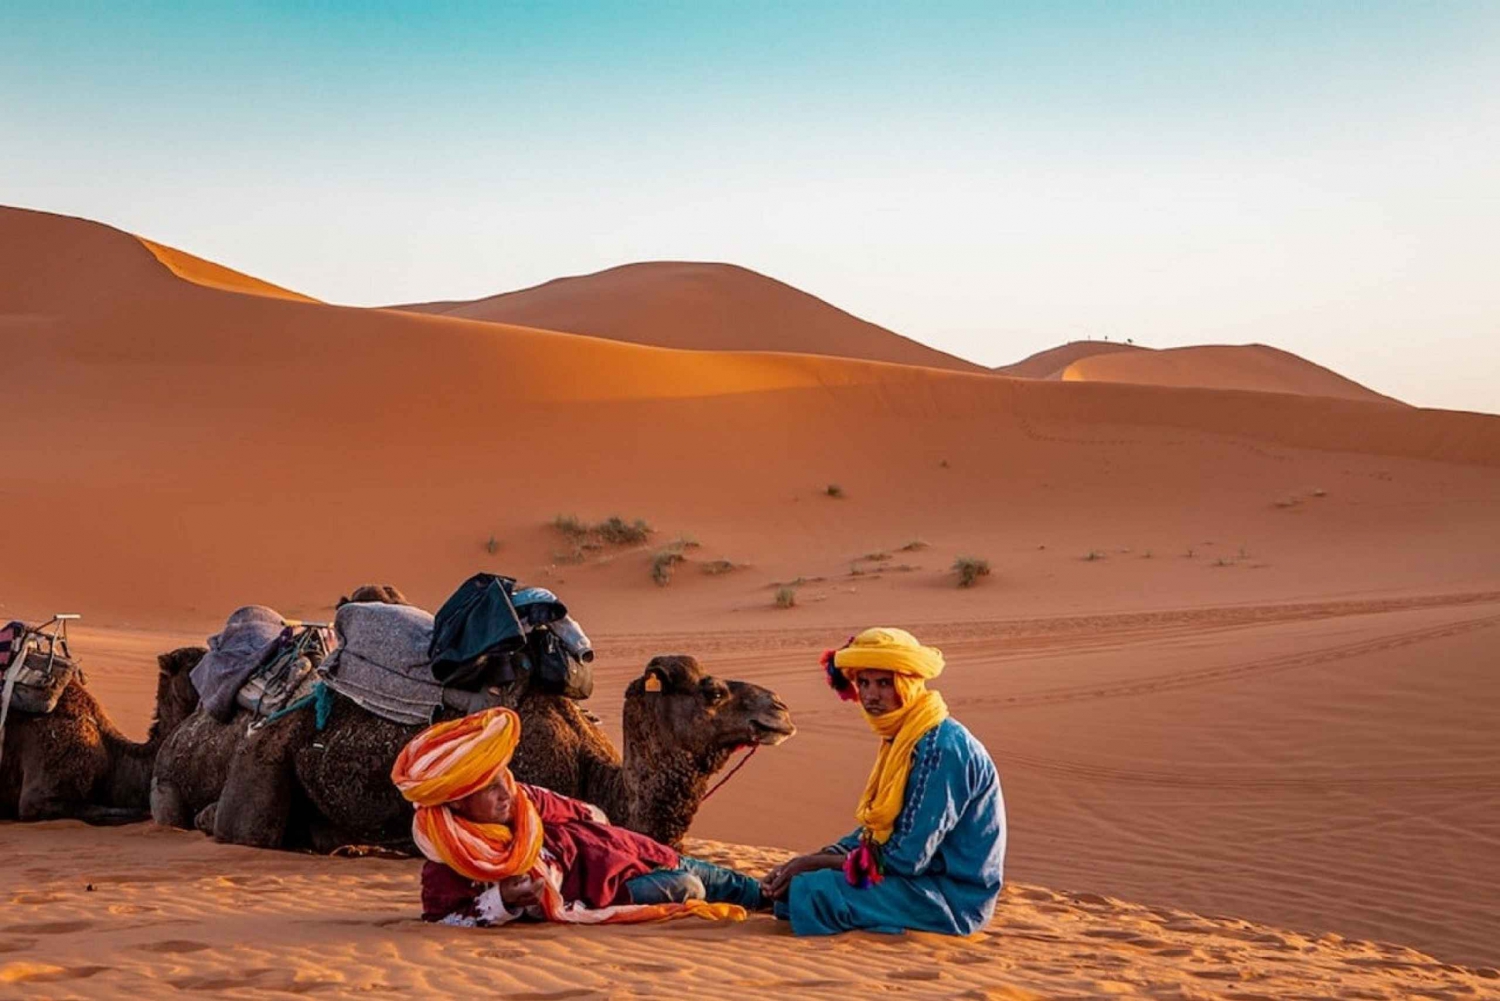 Fes til Marrakech via Marzouga: 2 dager og 1 natt i ørkenen